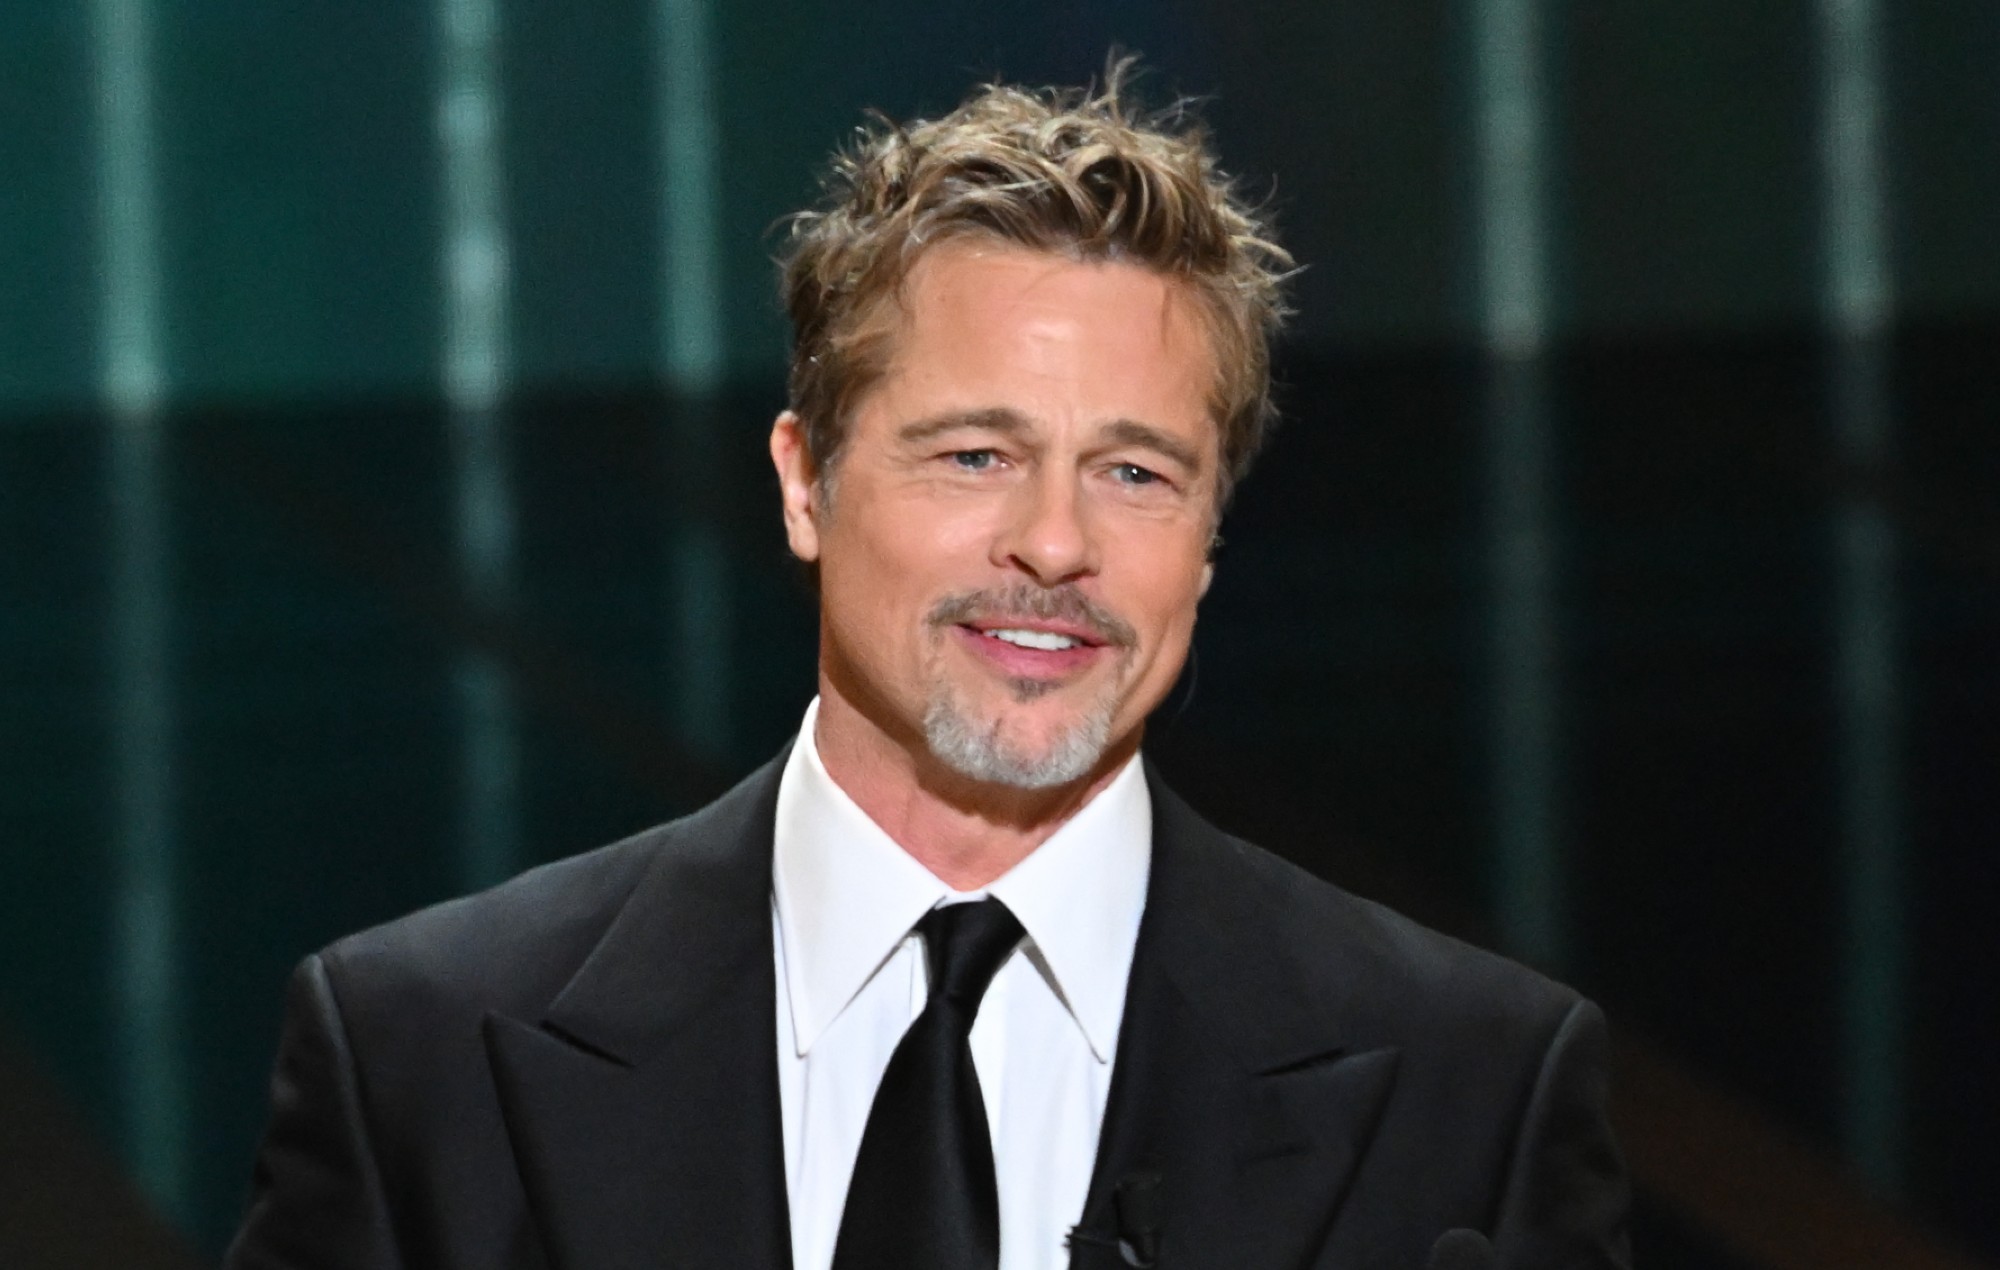 El hijo de Brad Pitt dice que hizo de la vida de su familia "un infierno constante" en un post desenterrado del Día del Padre